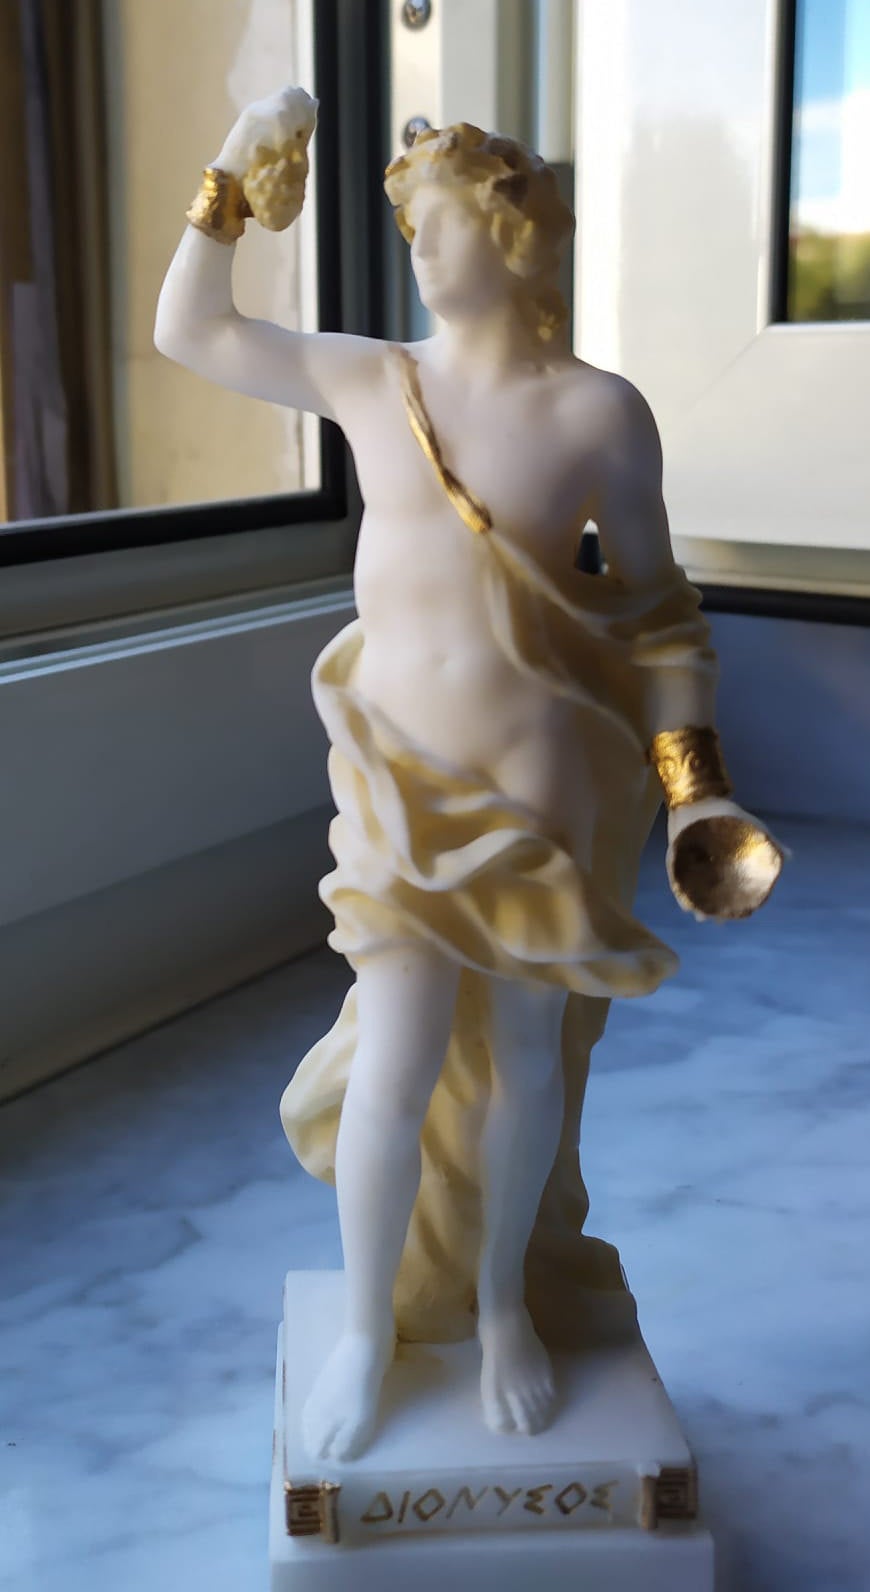 Dionysus statue 3-791-p from eStatueShop